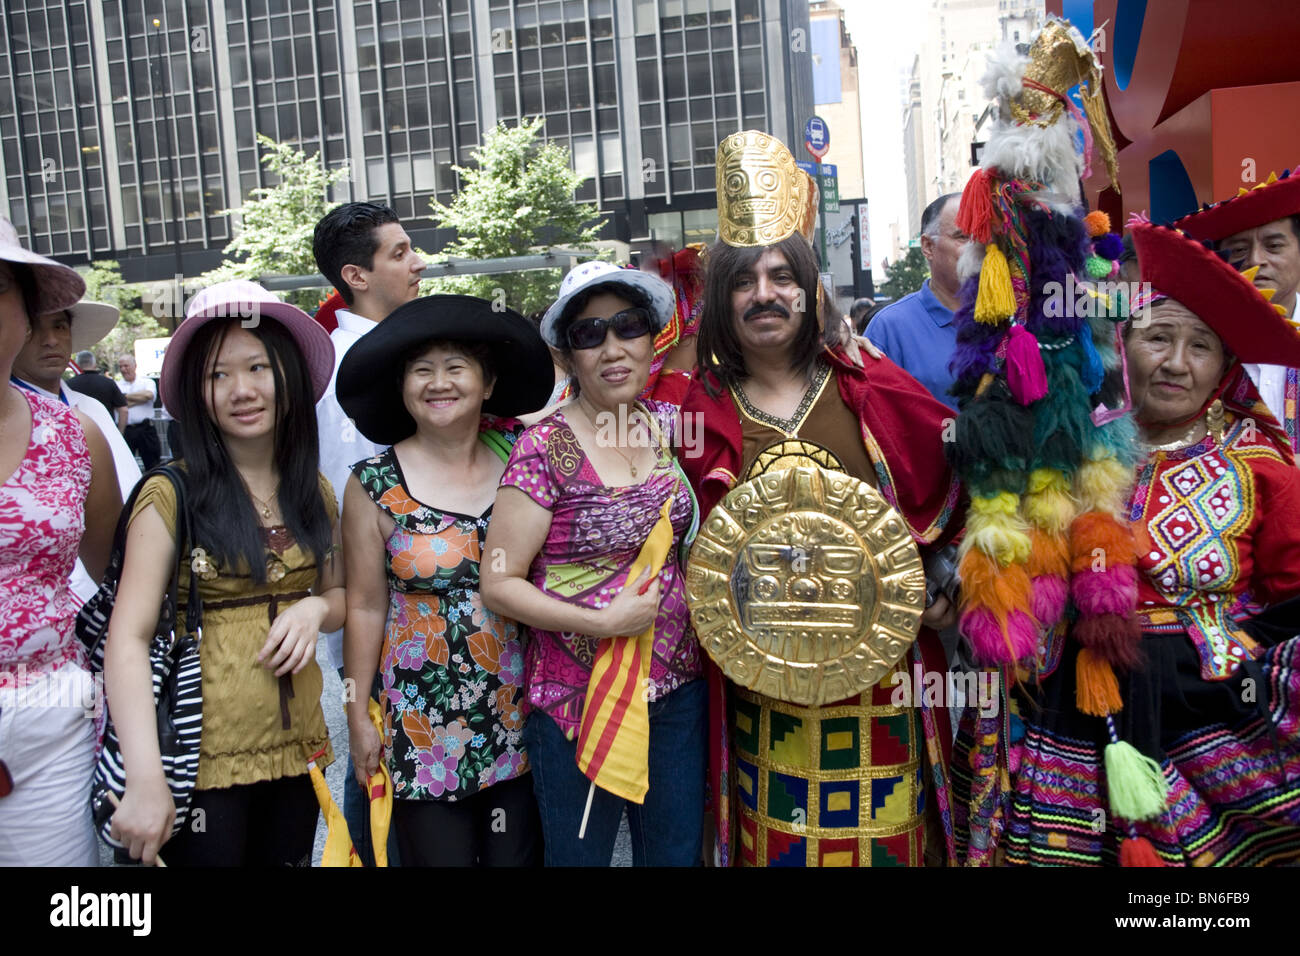 Les immigrants internationaux Parade, NEW YORK : Portrait of Peruvian (R) et vietnamiens (L) immigrants sur Avenue à New York. Banque D'Images